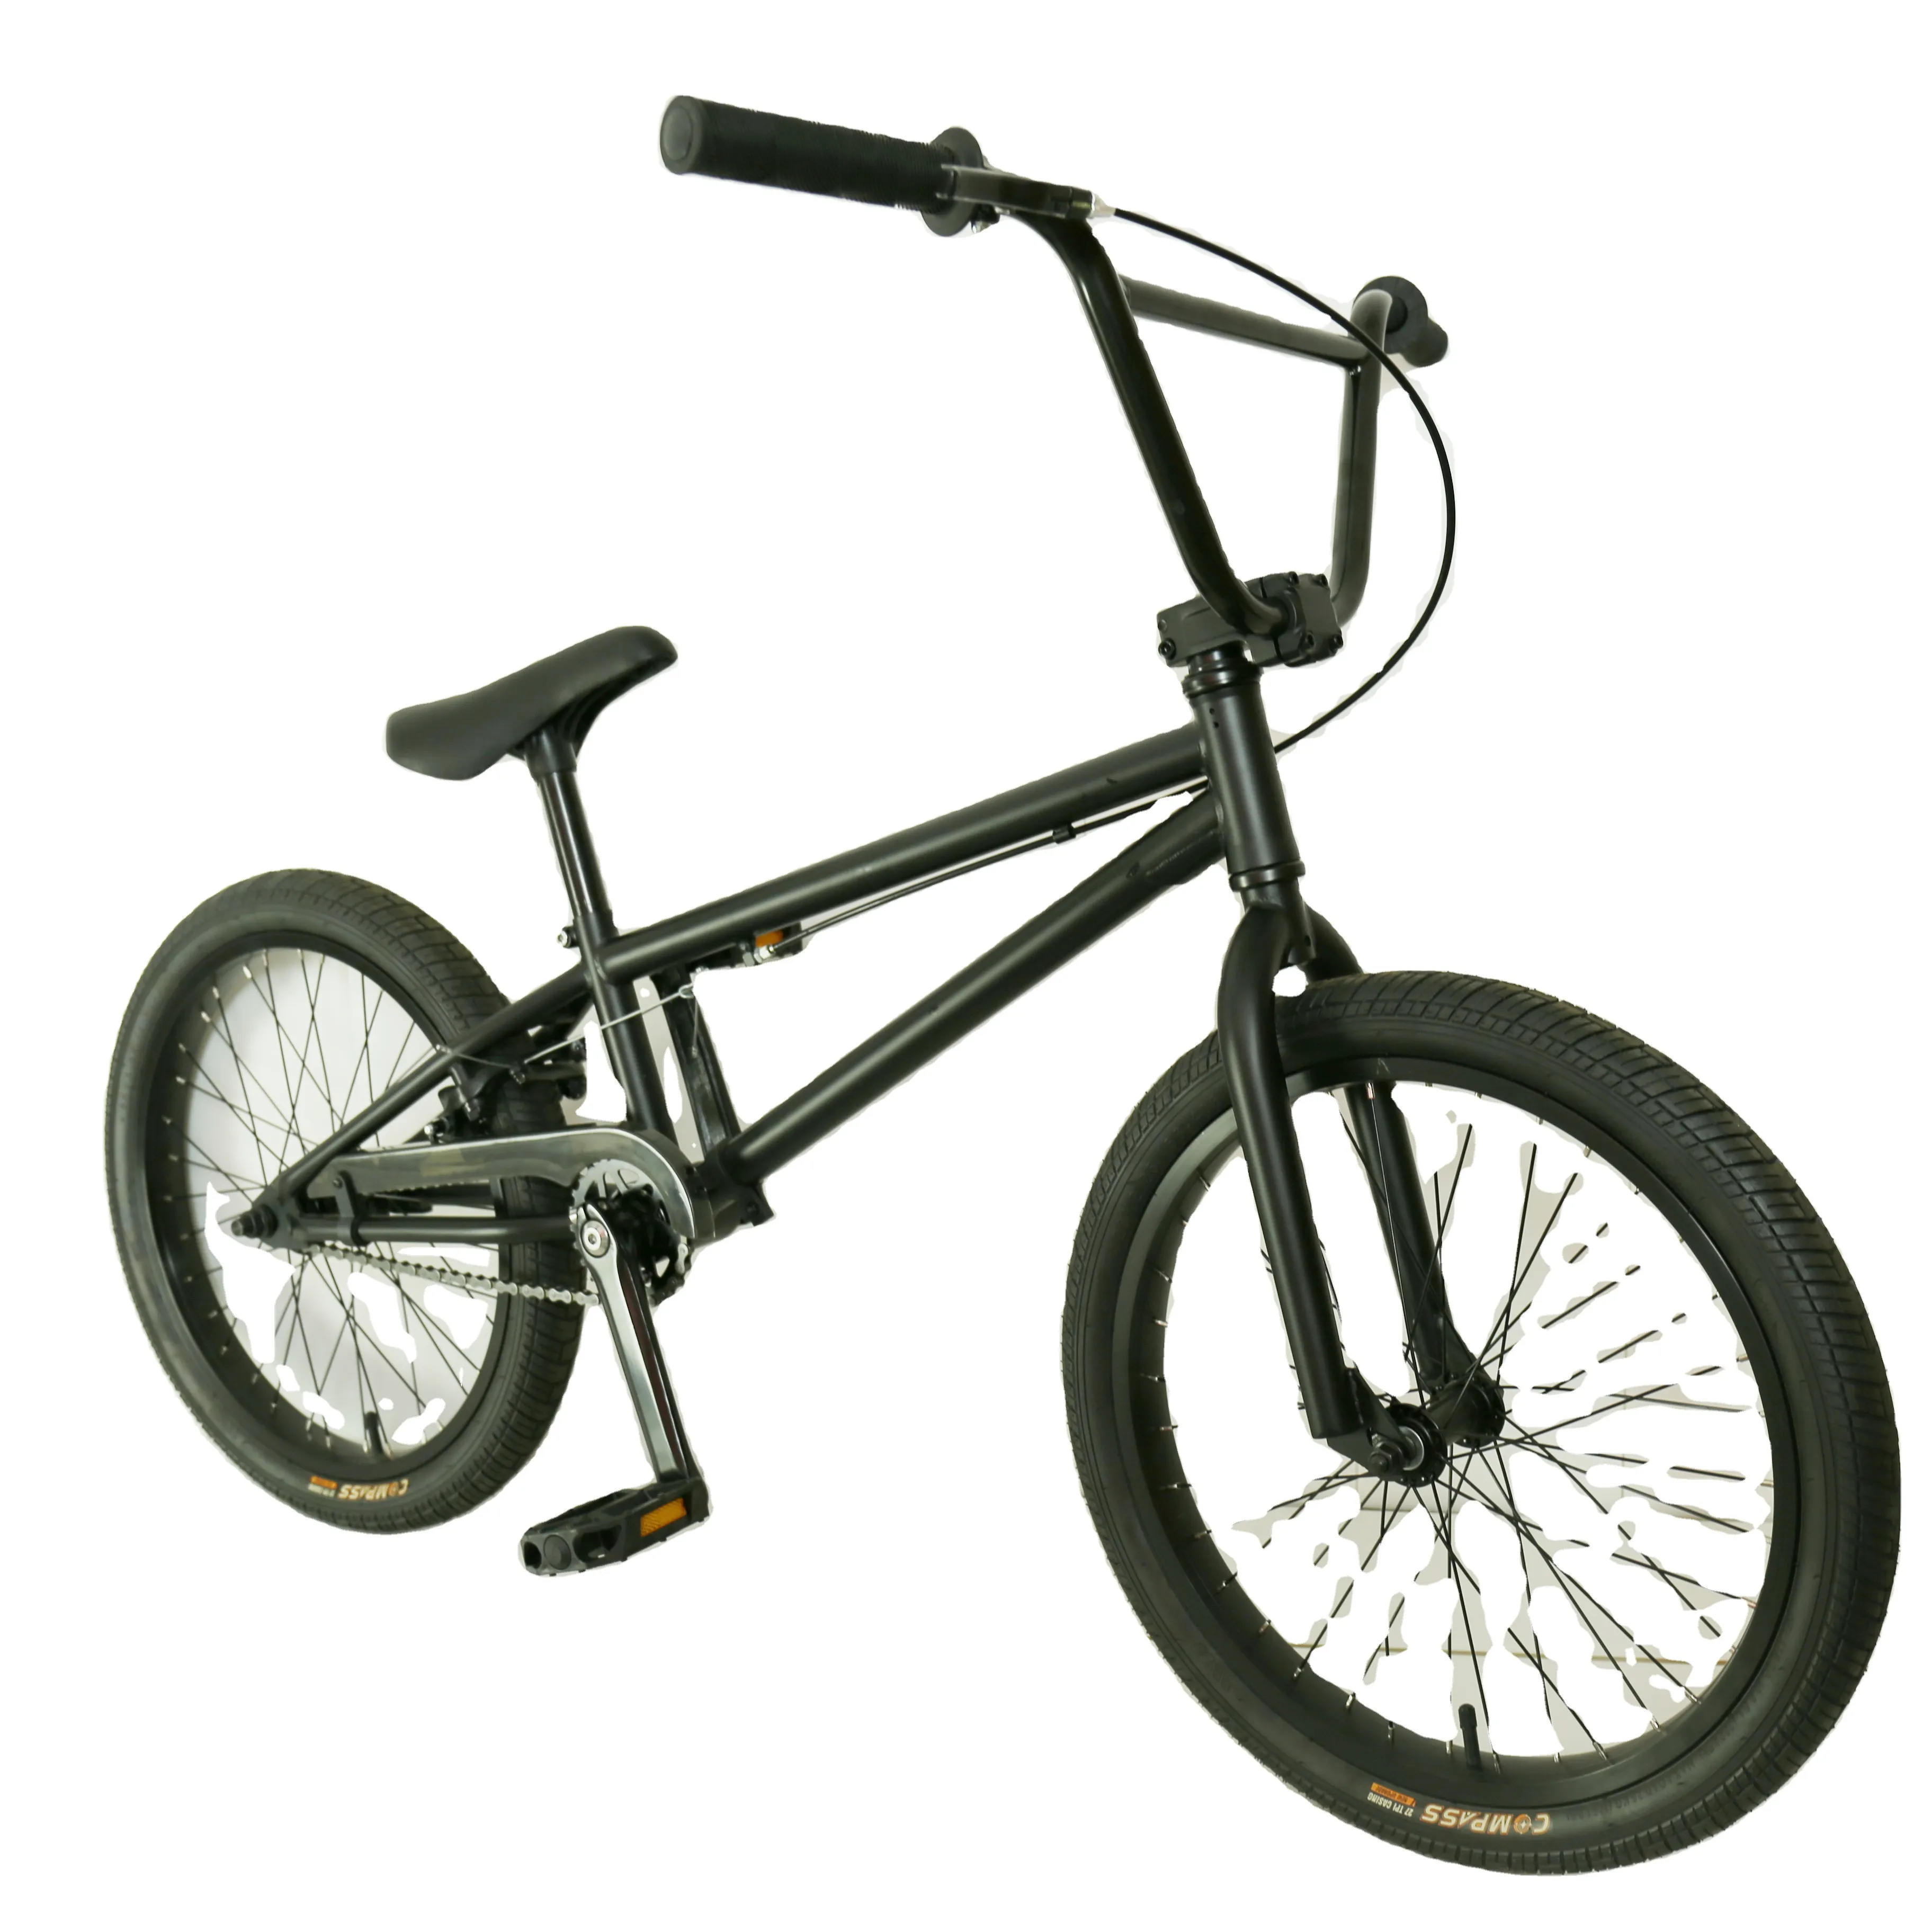 OEM customized24inch चरम खेल साइकिल सड़क बाइक फ्रीस्टाइल बाइक bmx